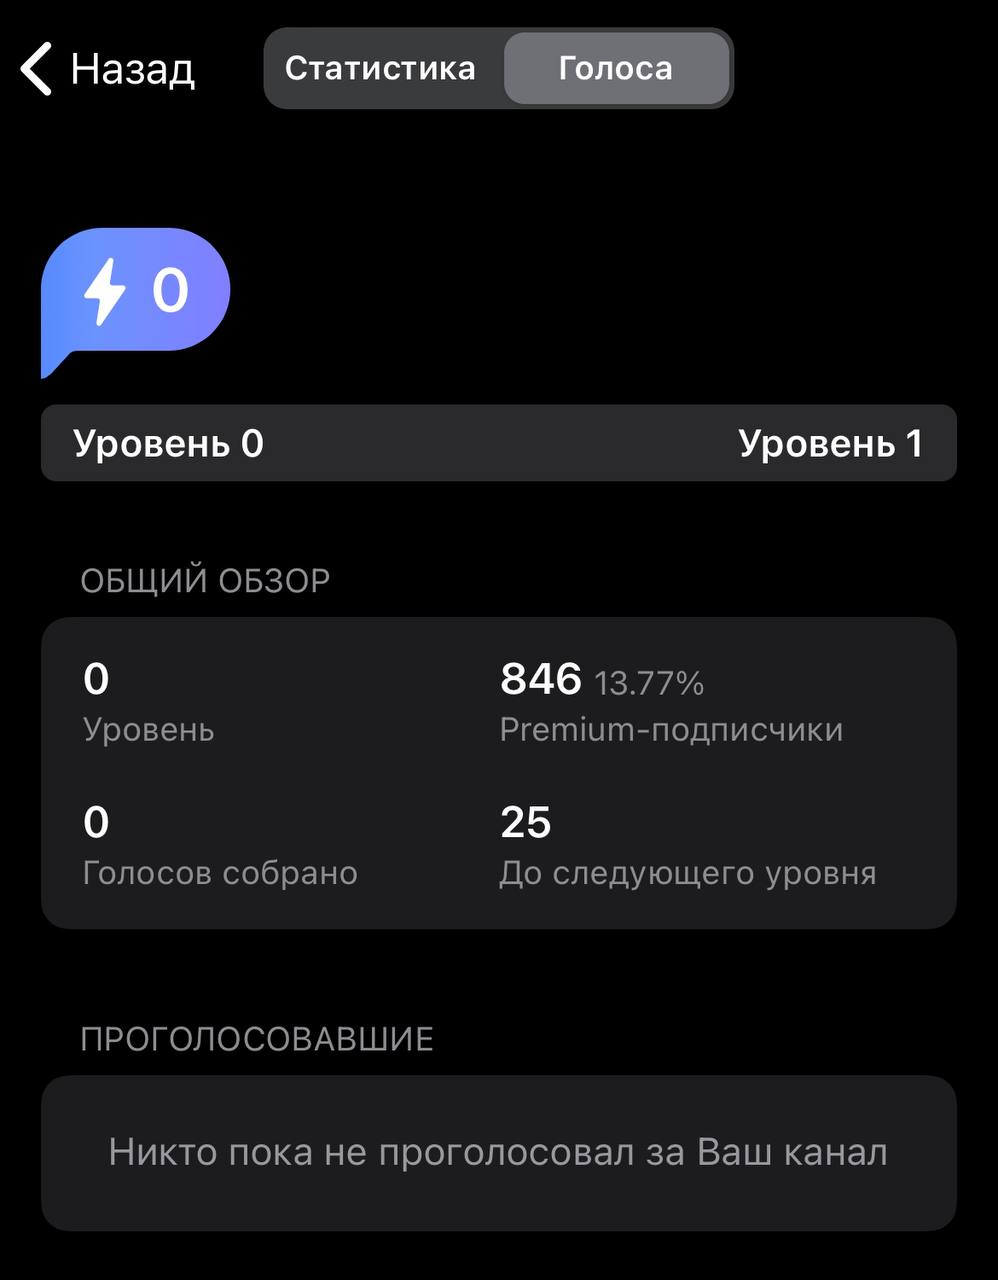 Телеграмм премиум скачать бесплатно андроид последняя версия без вирусов полную на русском языке фото 88